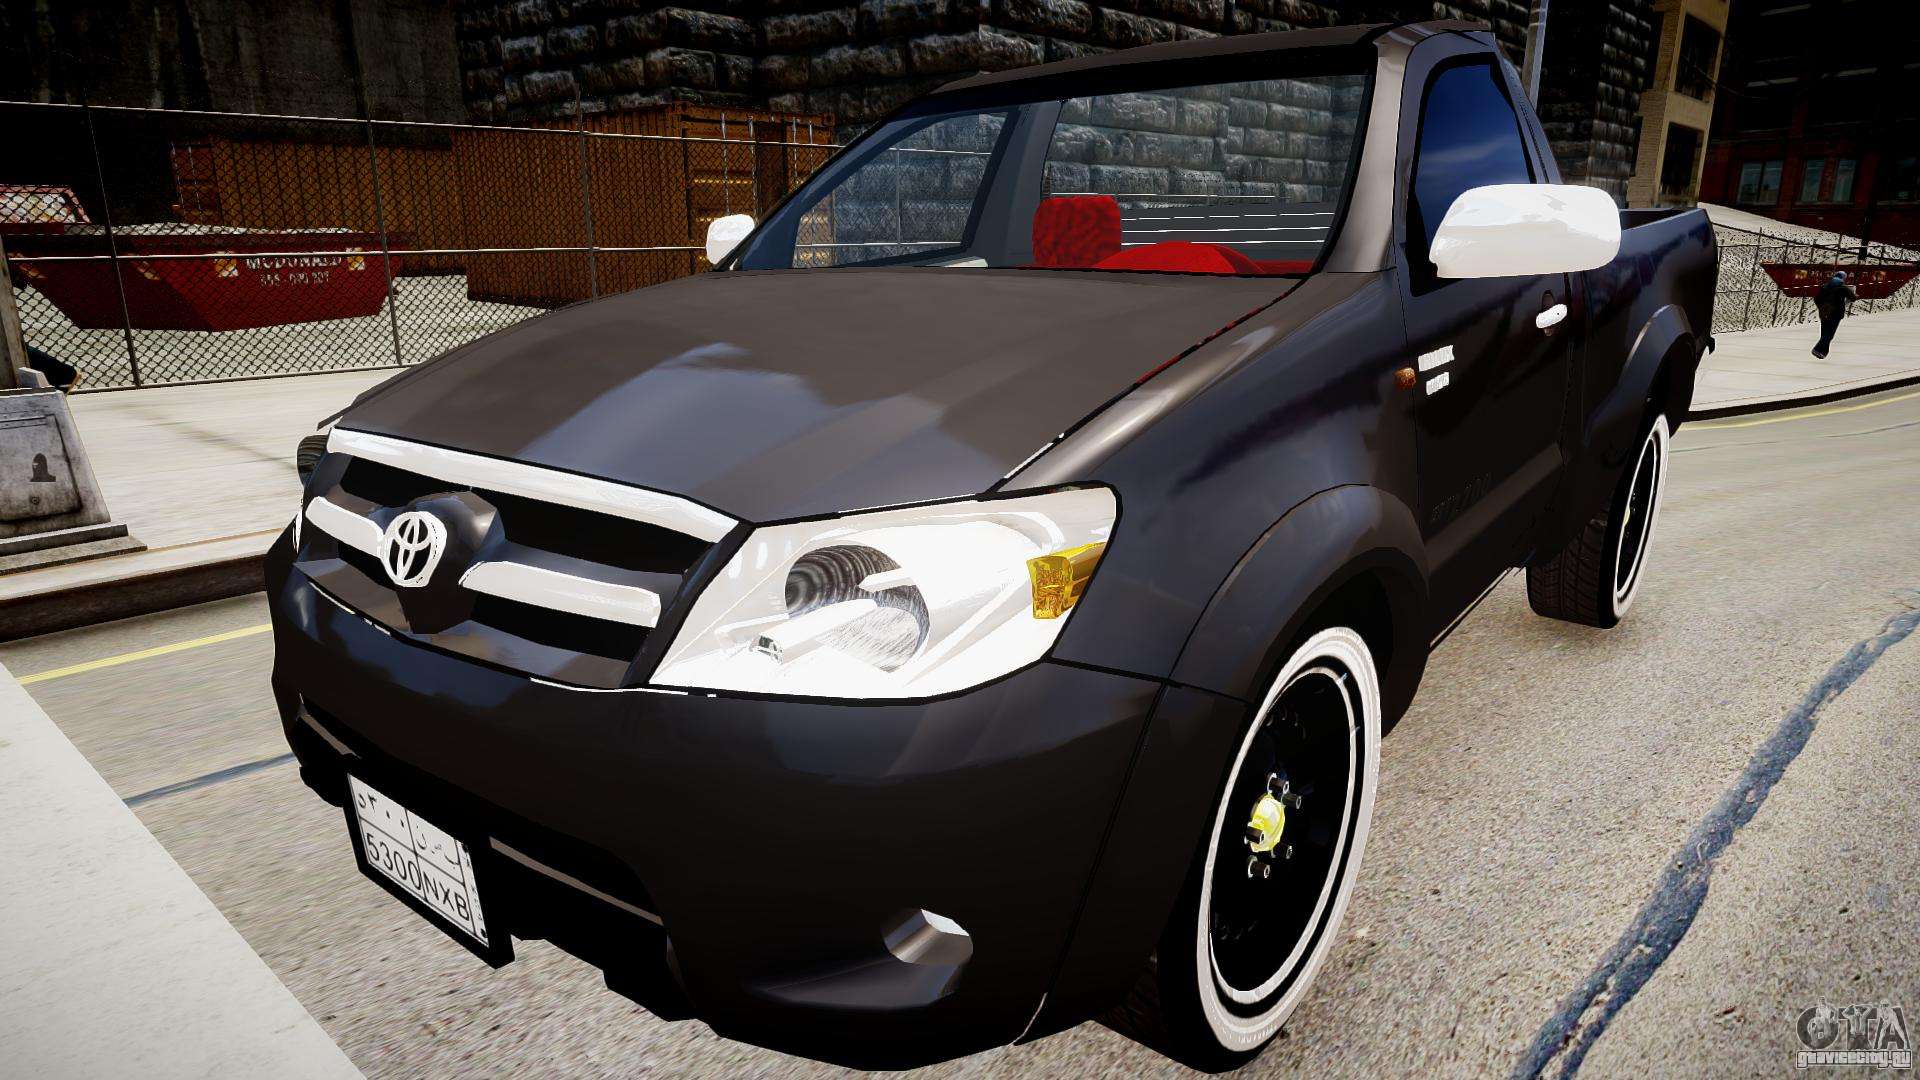 Мод для GTA 4 добавит и разнообразит вашу игру Toyota Hilux 2010 2 doors. 